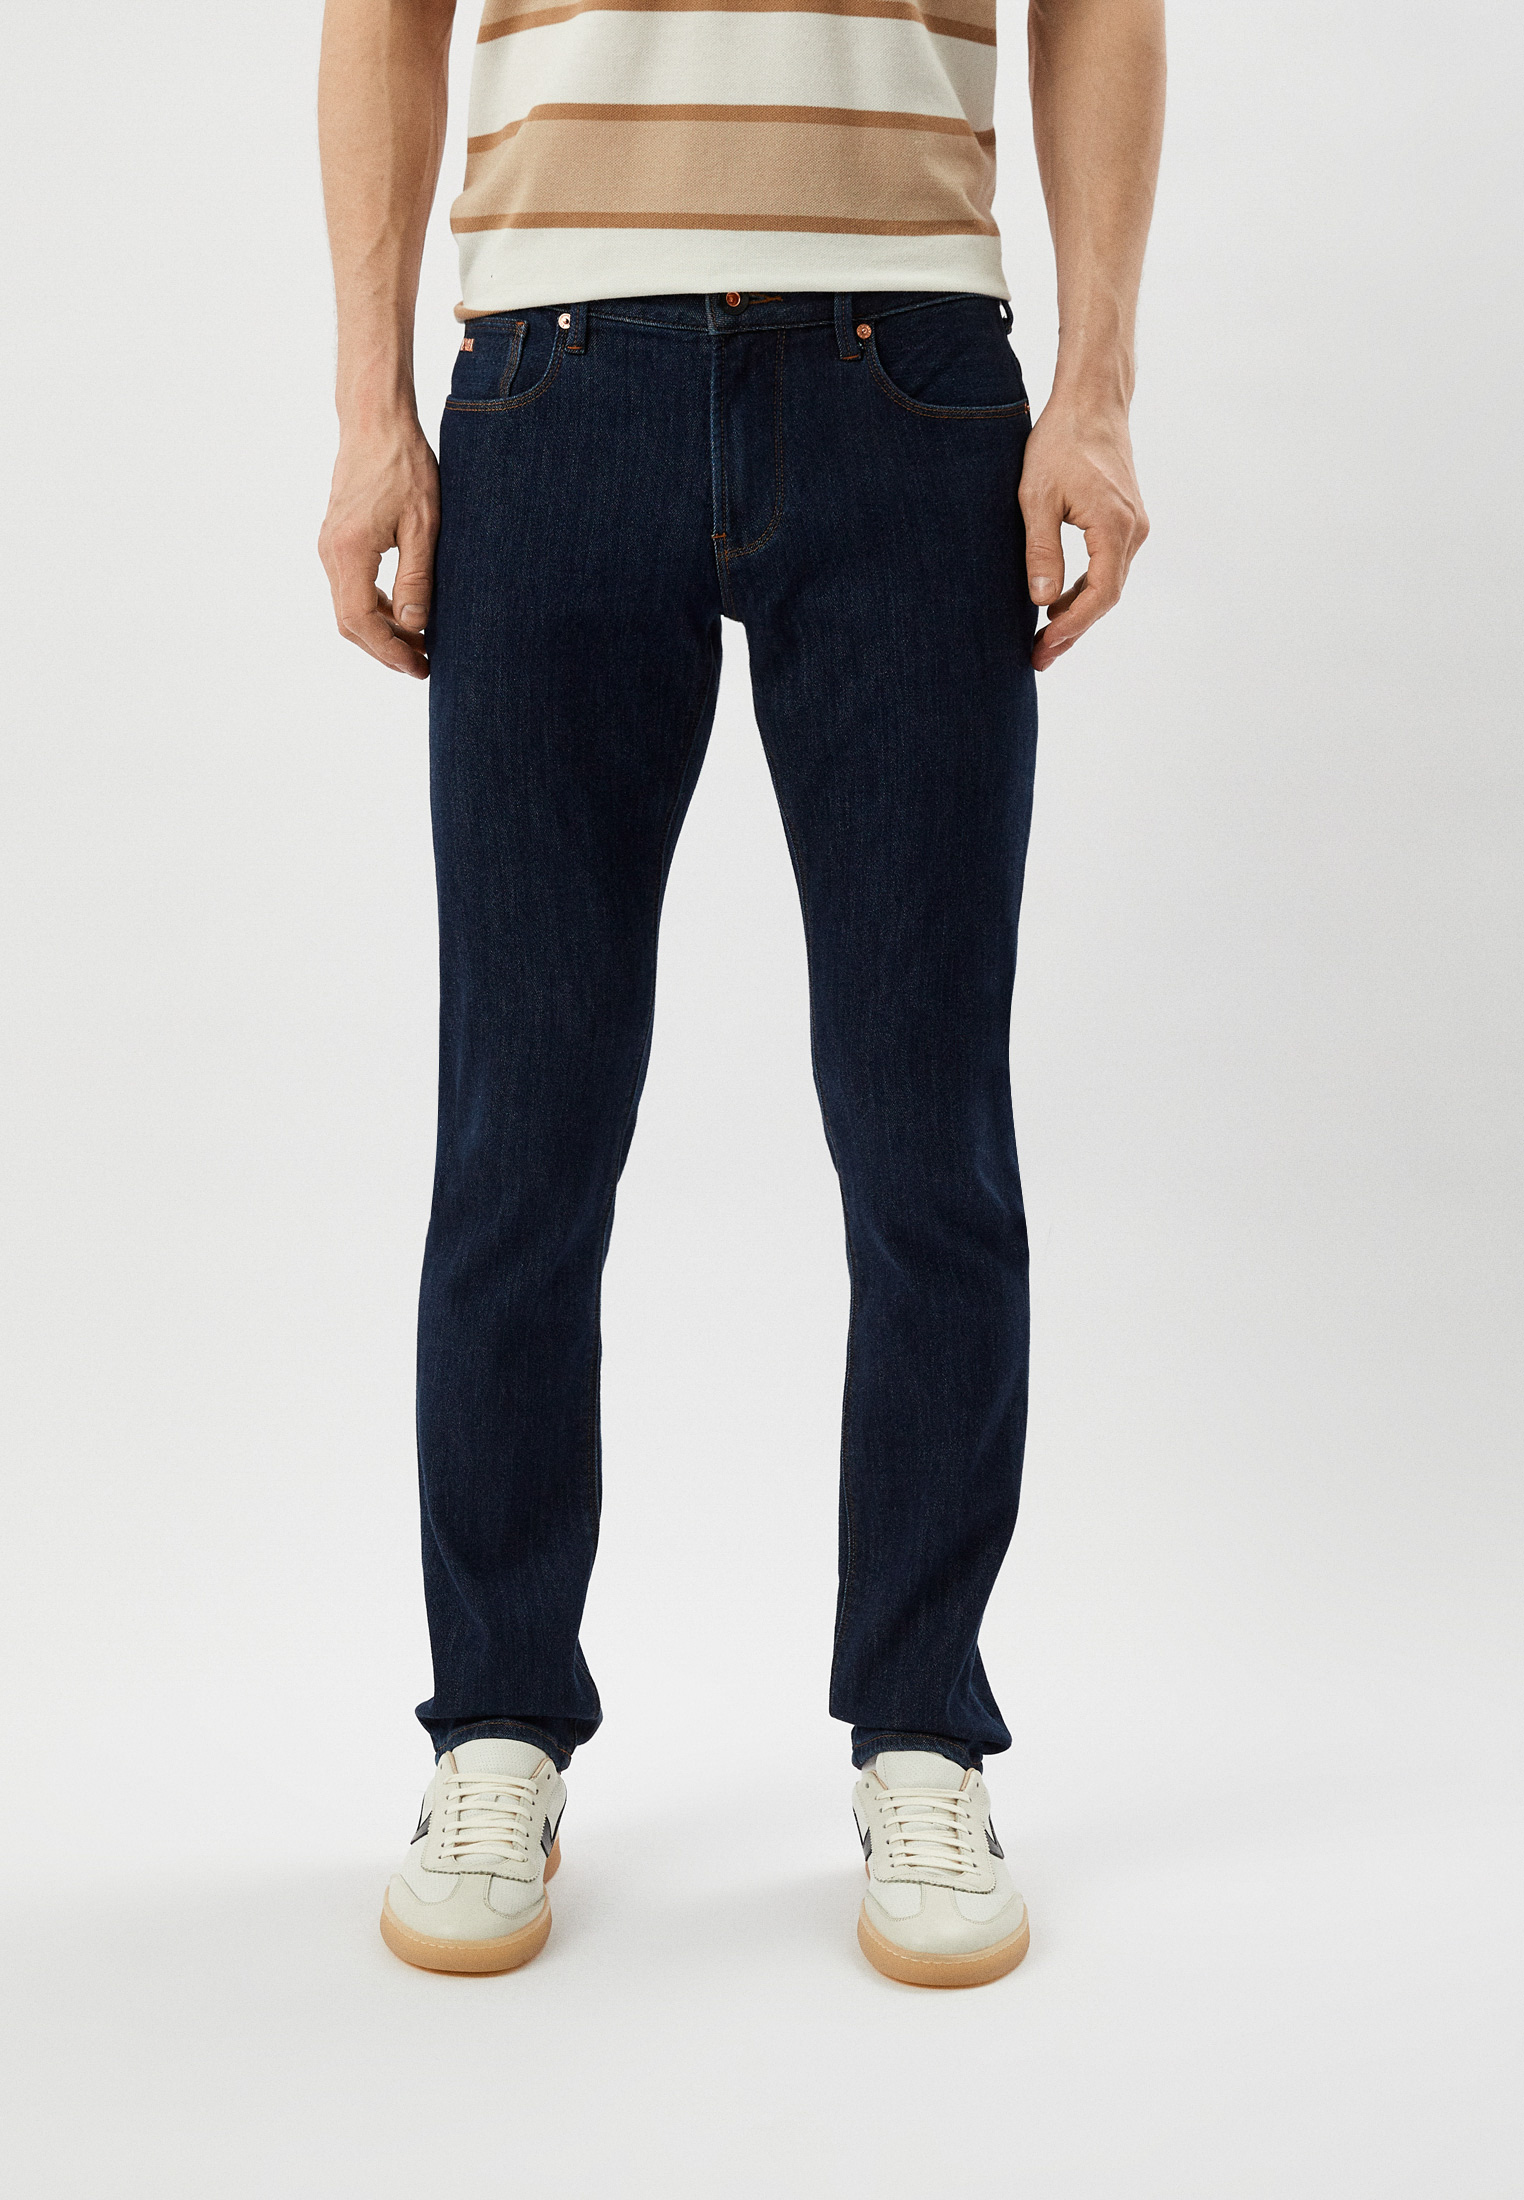 Мужские зауженные джинсы Emporio Armani (Эмпорио Армани) 3R1J06 1DPXZ: изображение 1